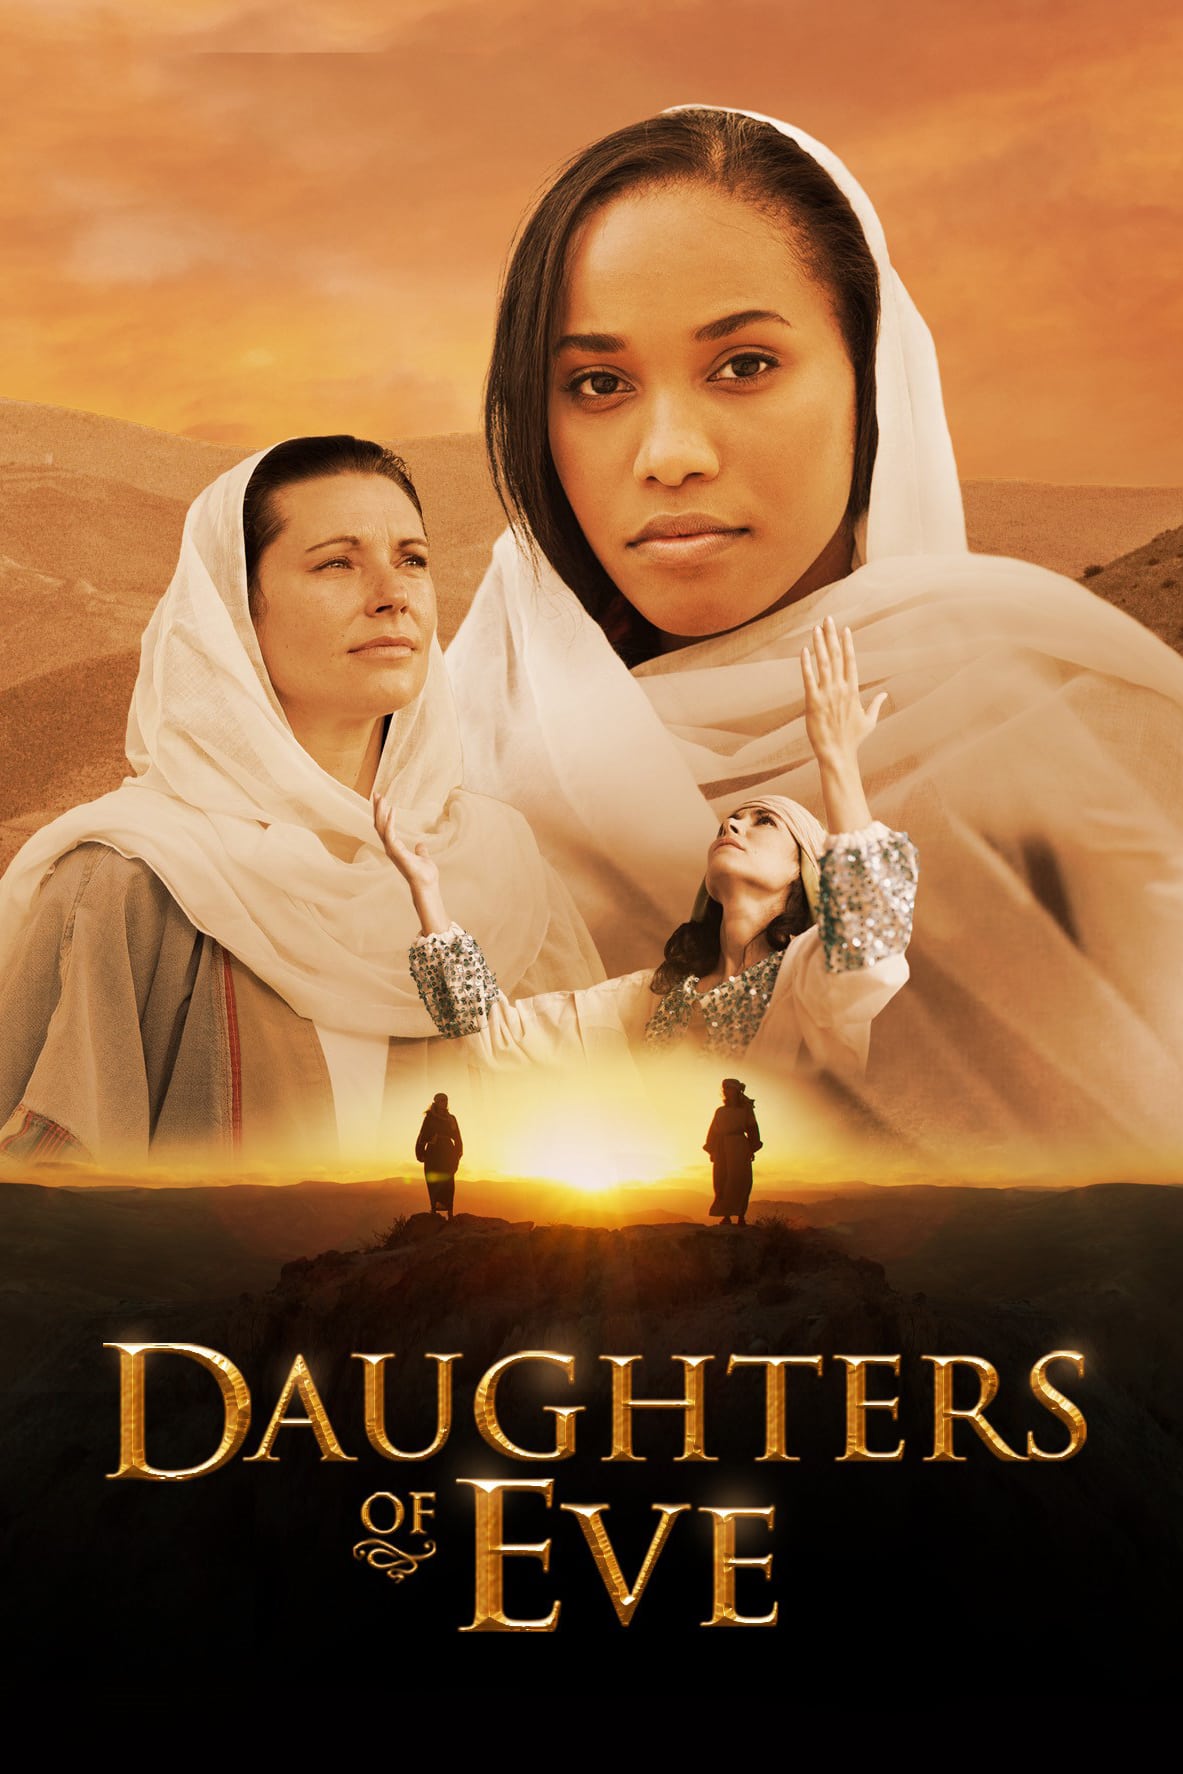 The daughters of eve. The daughters of Eve группа. Watch daughters of Eve. Watch daughter of Eve 1985.